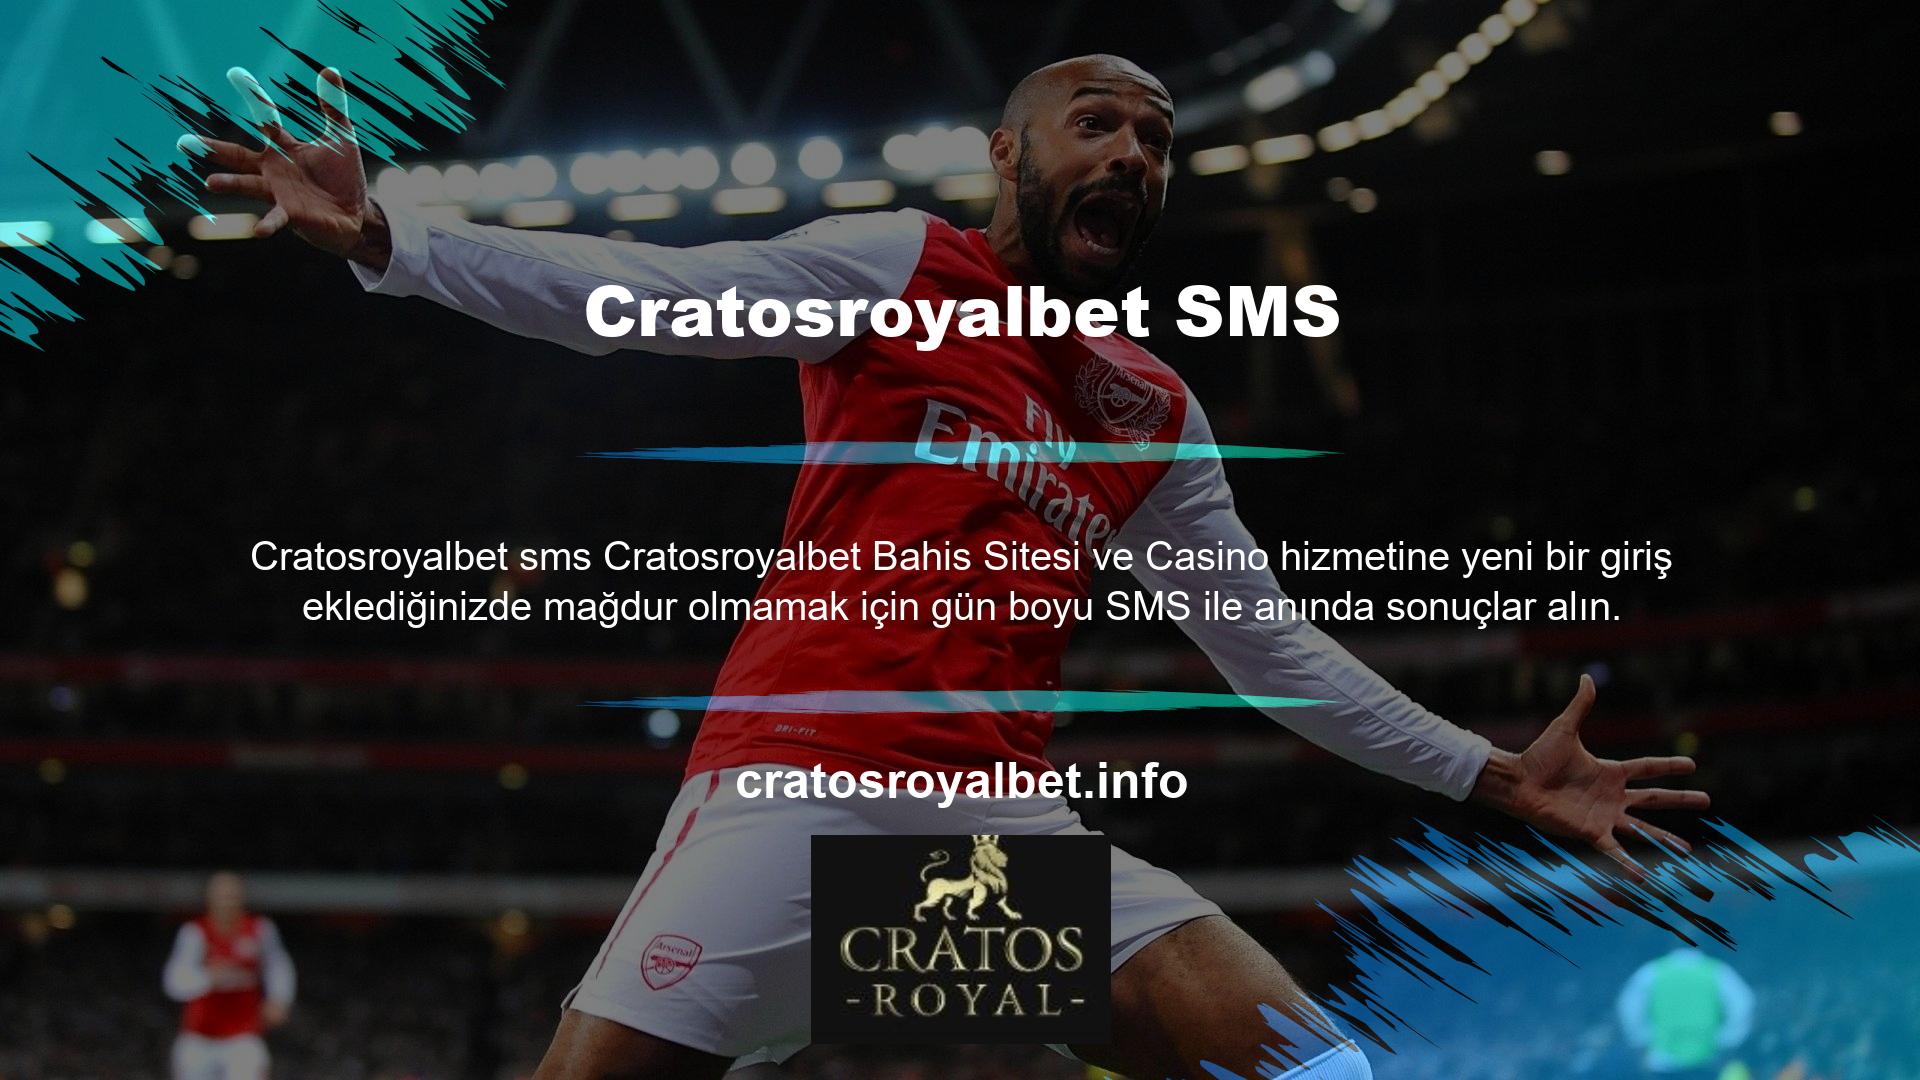 Sunduğumuz hizmetler kapsamında SMS Cratosroyalbet gönderiminin ücretli mi ücretsiz mi olduğunu kontrol ediyoruz